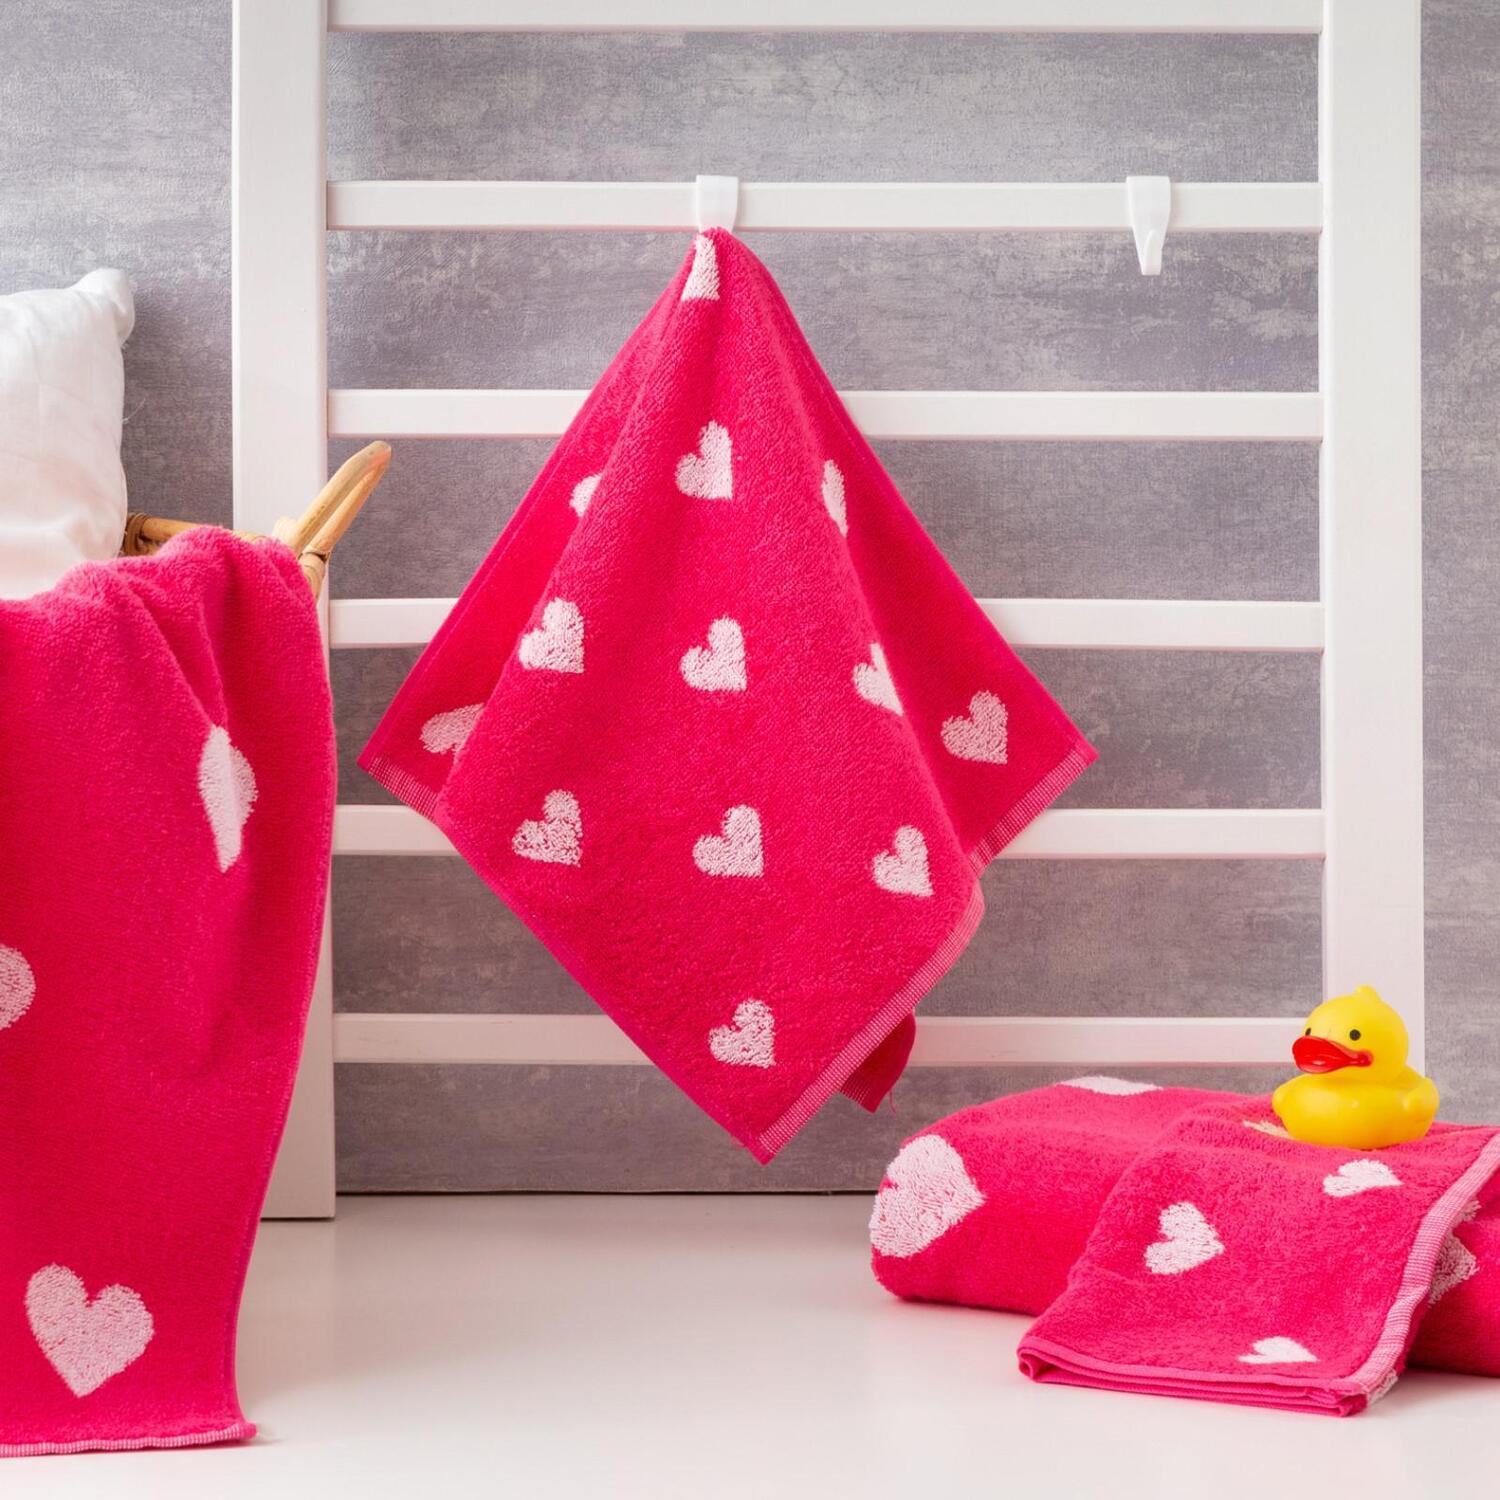 Детское полотенце Сердечки цвет: розовый (30х60 см), размер 30х60 см ros784848 Детское полотенце Сердечки цвет: розовый (30х60 см) - фото 1